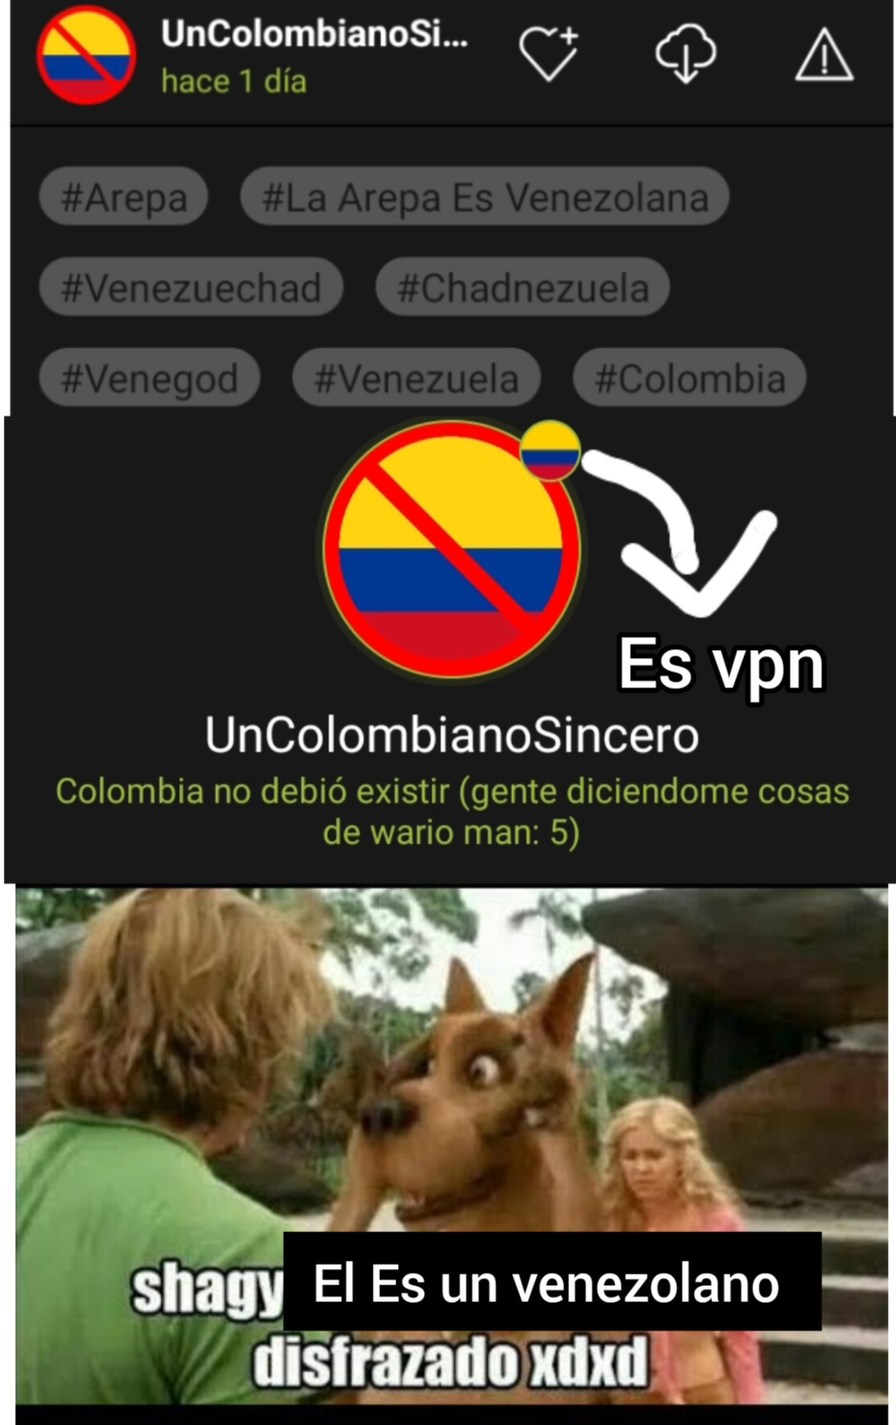 Shaggy el es un venezolano difrazado - meme